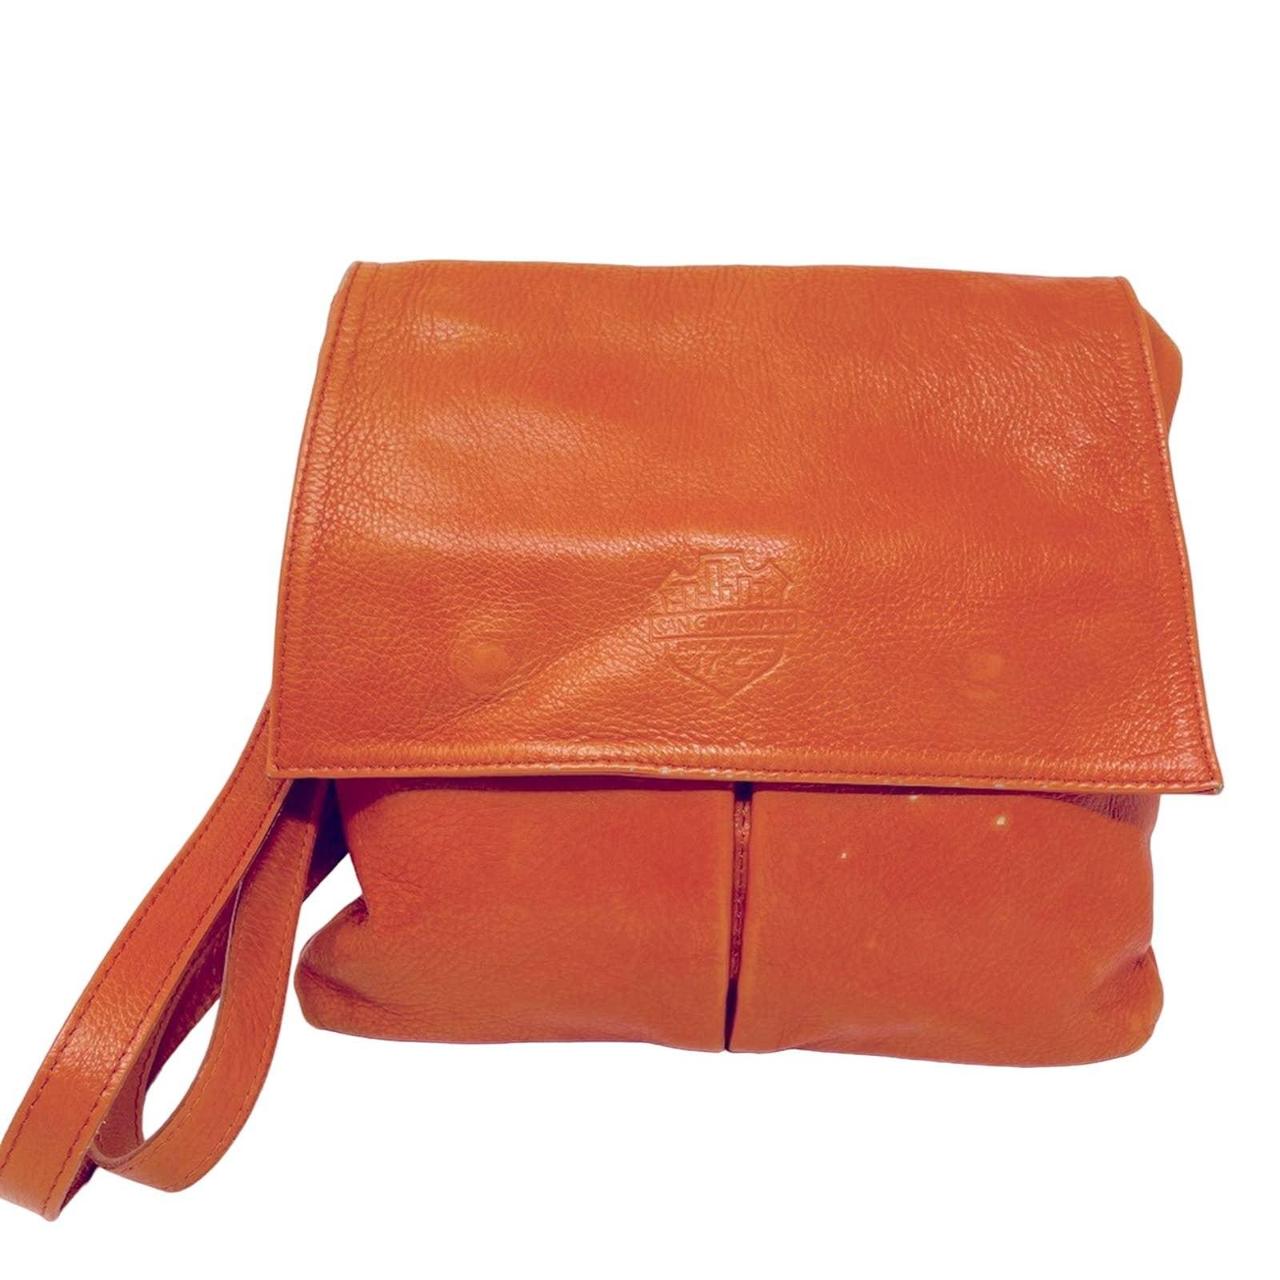 Dr. Martens 7 inch leather shoulder bag 🖤 Never - Depop